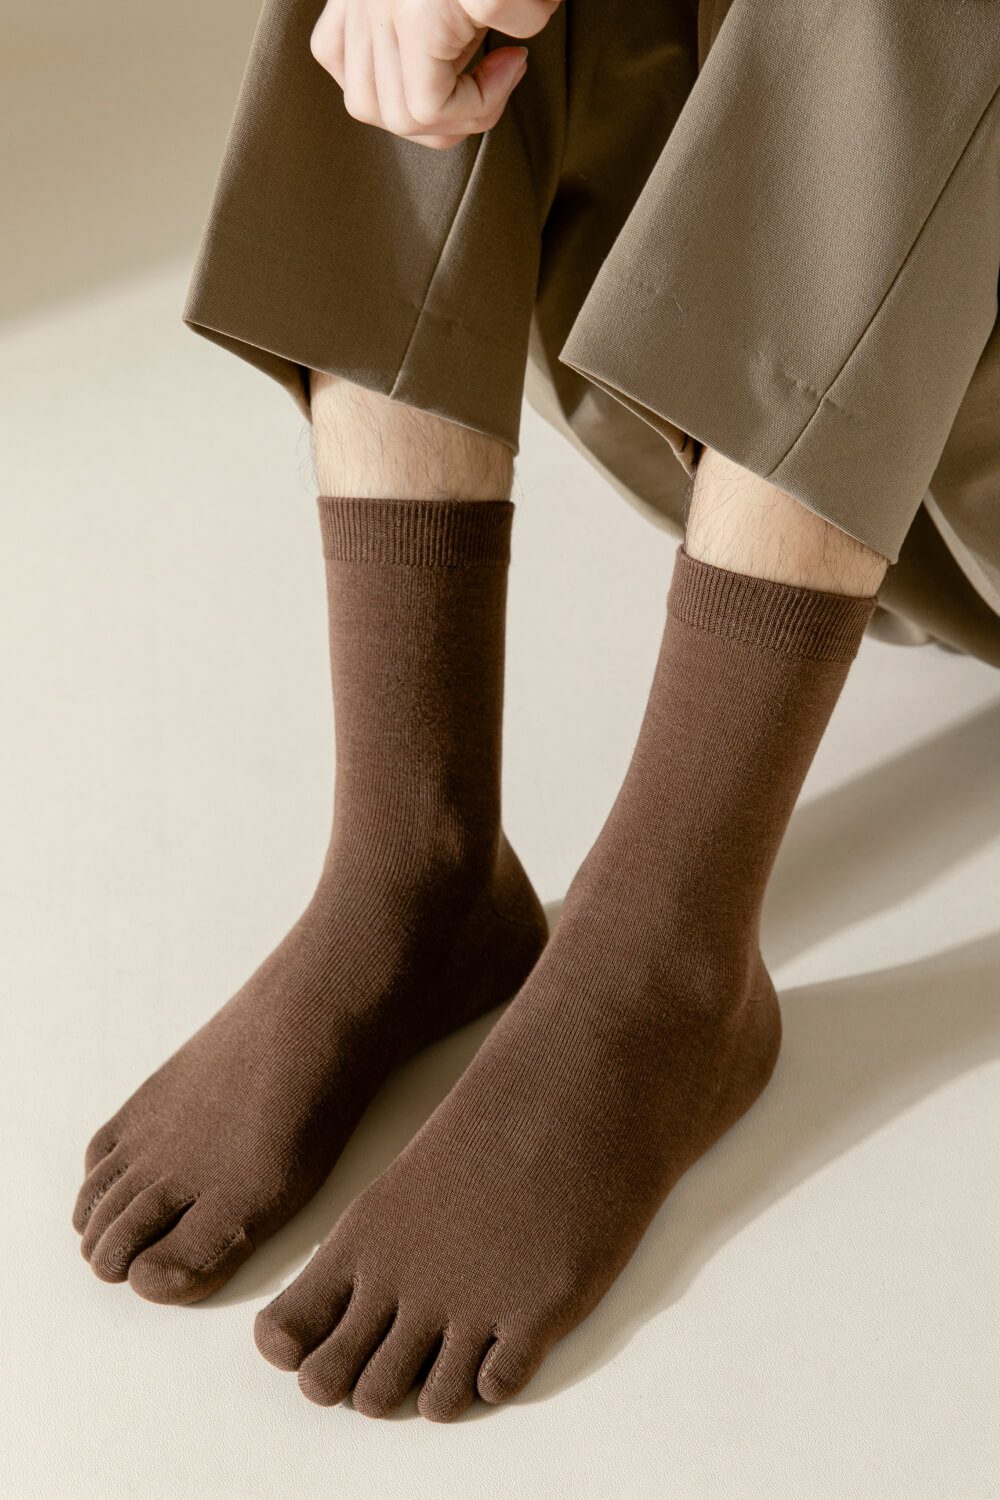 NicoFun 愛定做 8雙 五趾中筒襪 分趾襪 隱形襪 木